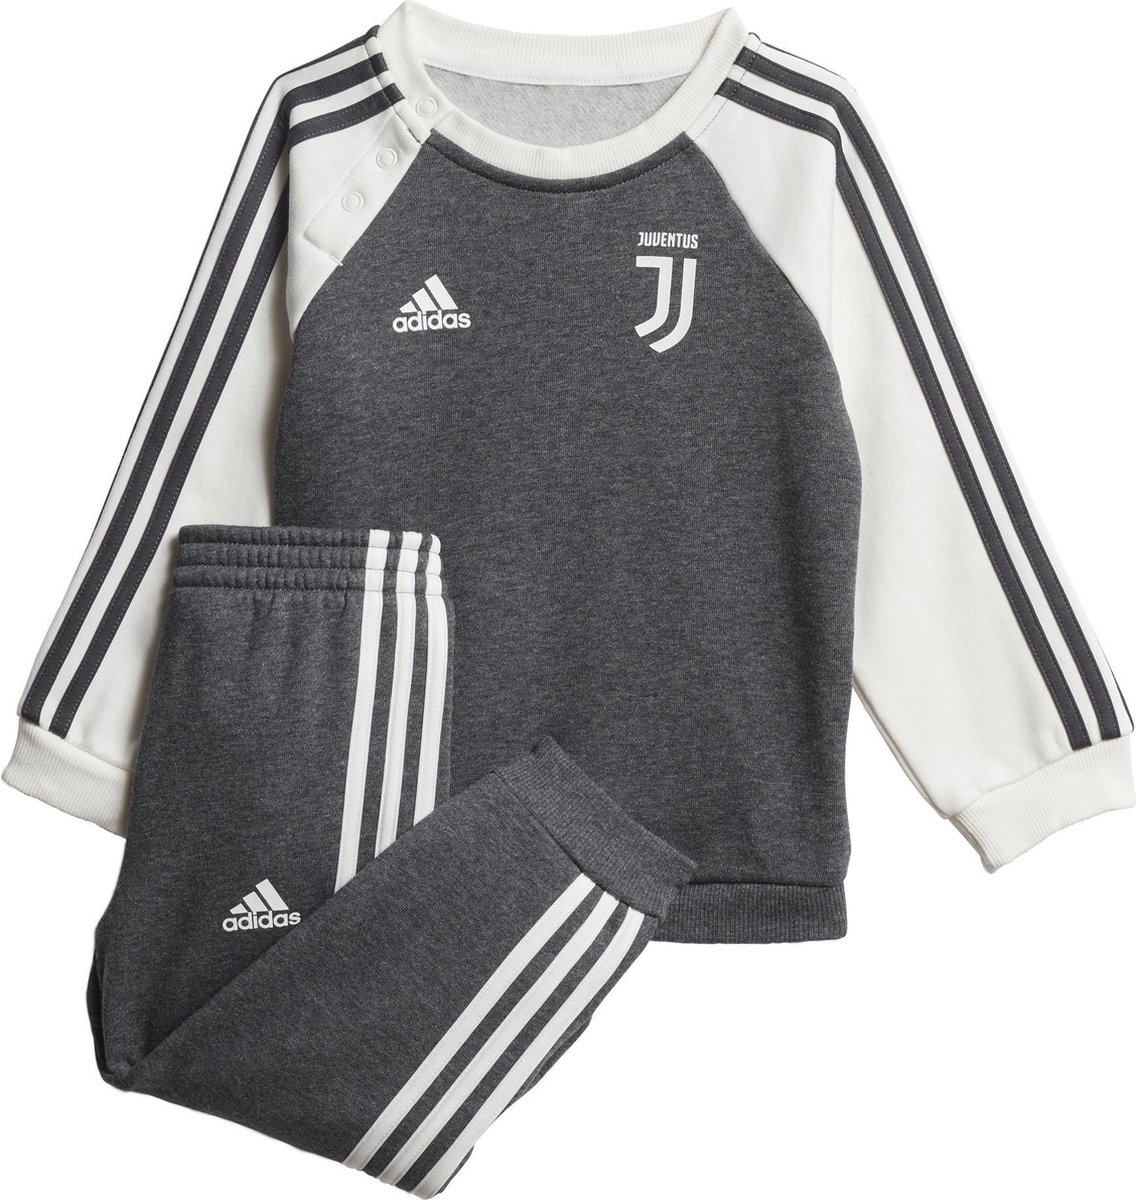 Spoedig letterlijk Voeding adidas Juventus Joggingspak 2019-2020 Baby - Donkergrijs/grafiet - Maat 86  | bol.com